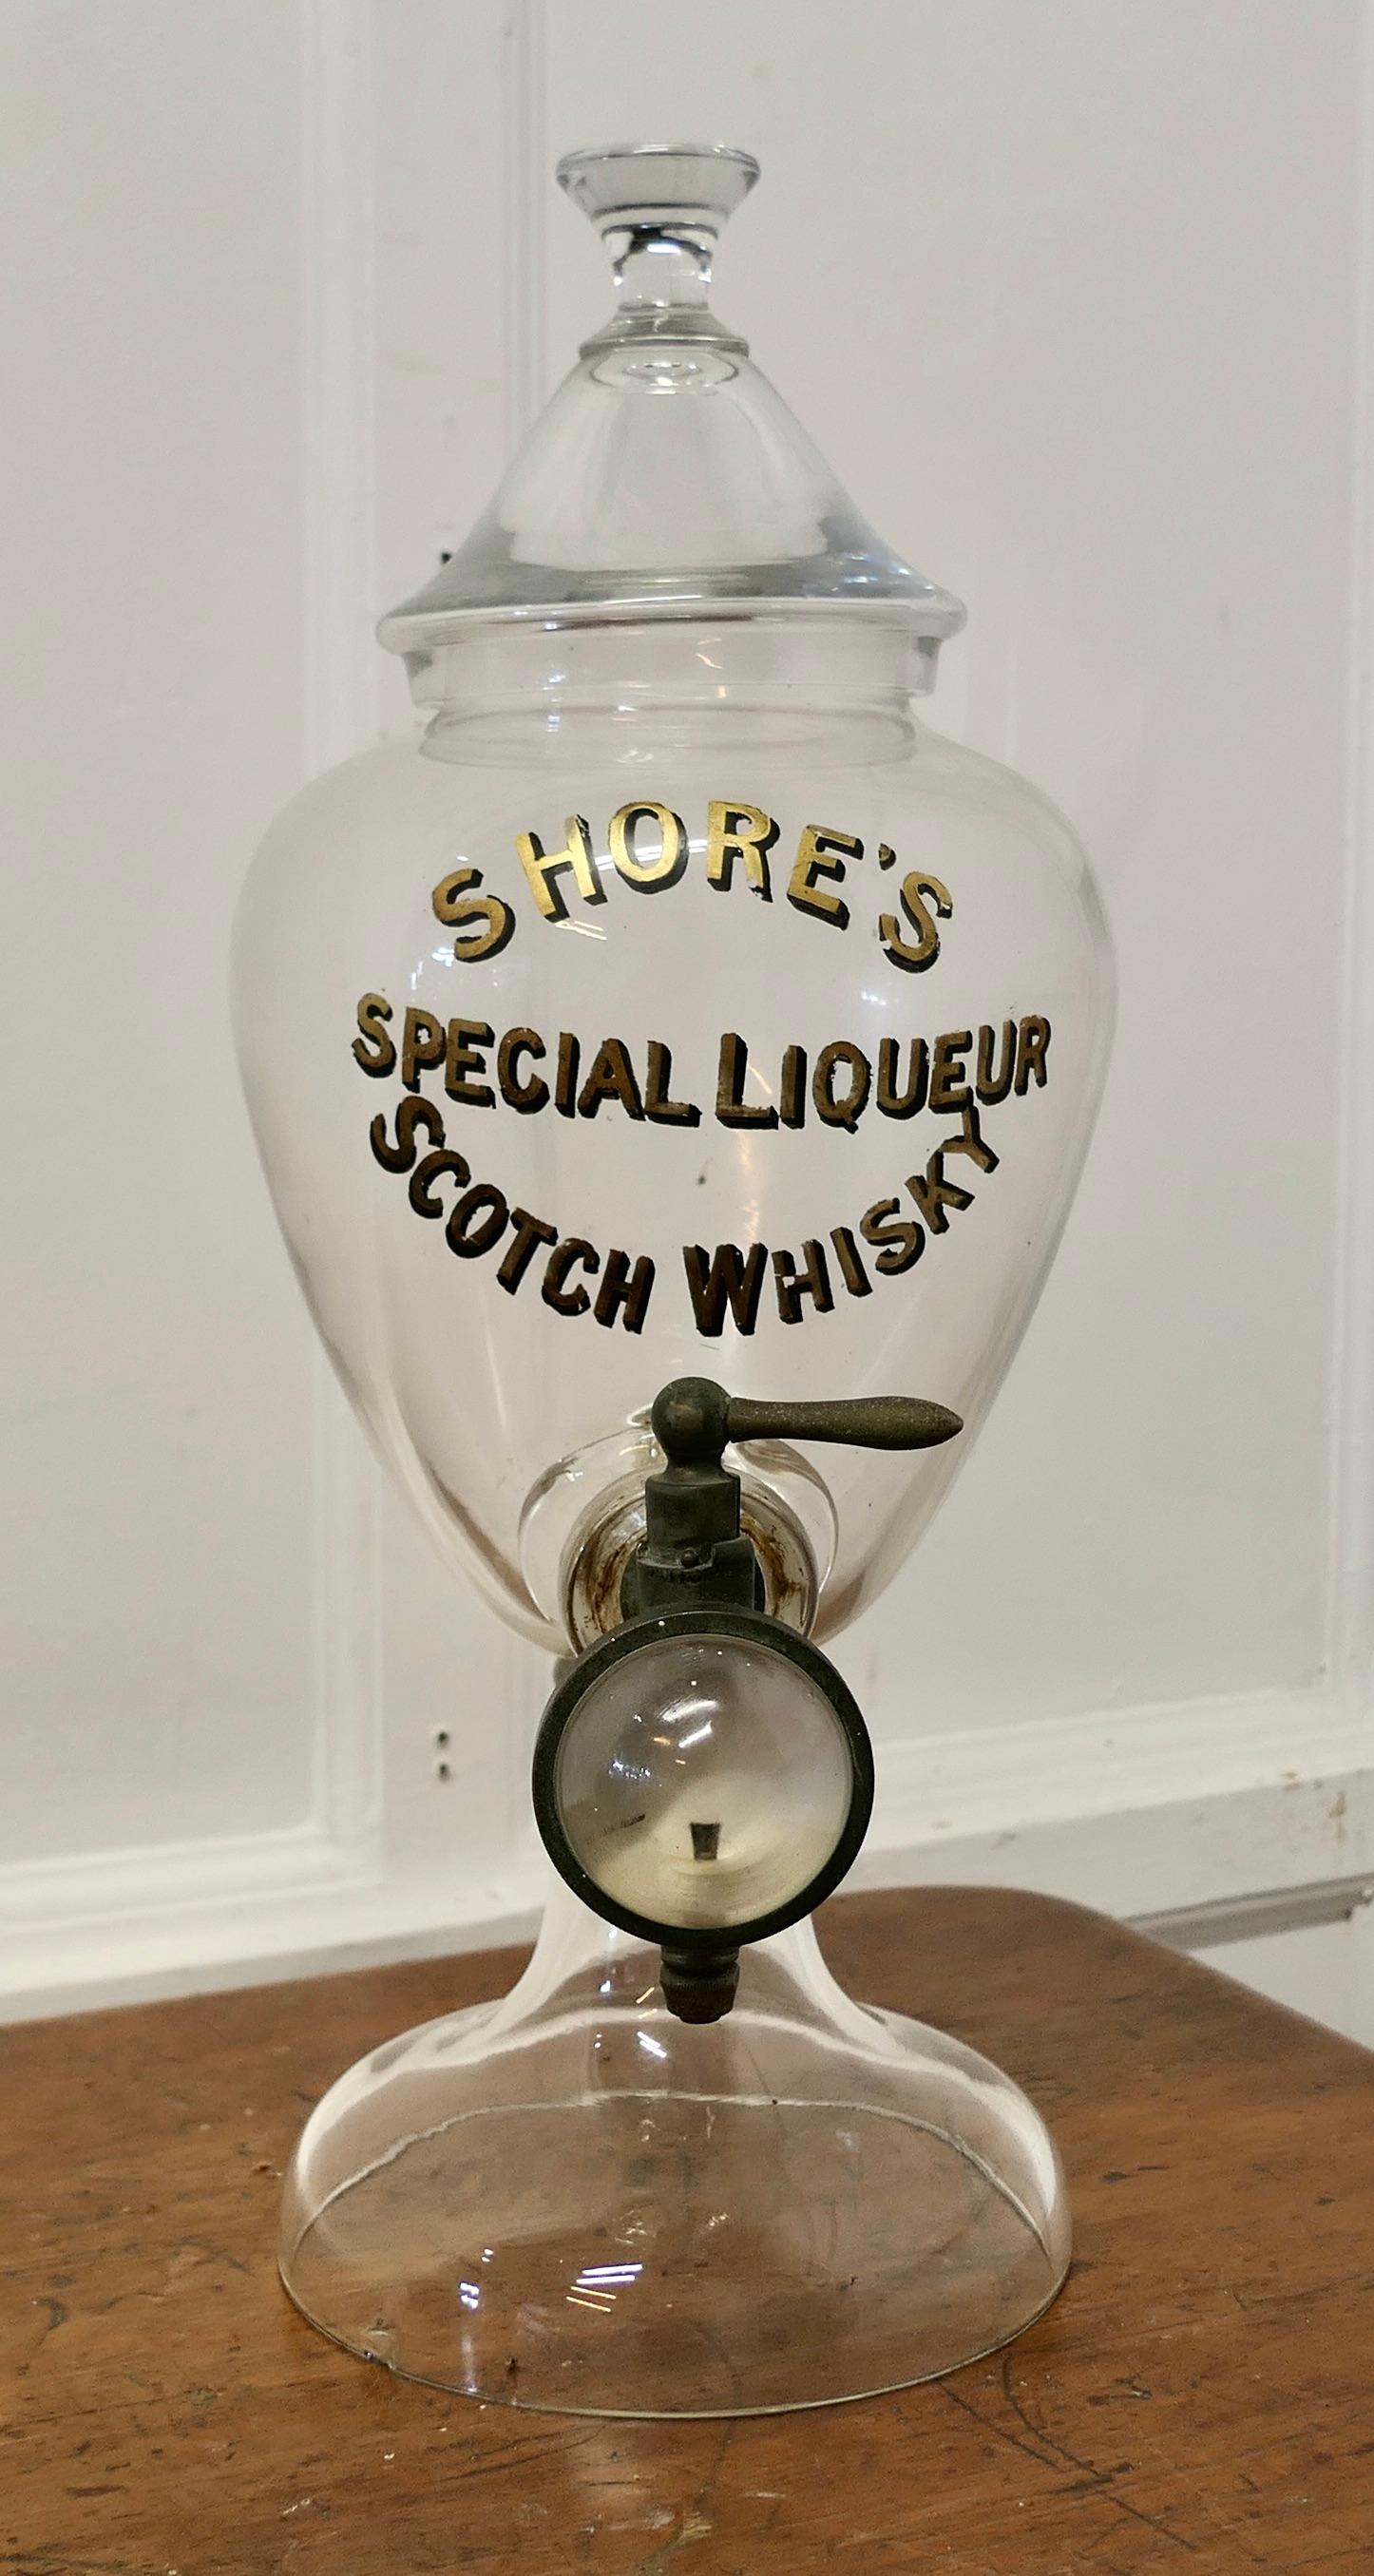 Distributeur de liqueur spéciale Shore's Scotch Whiskey Samovar 
Le samovar est en bon état, il y a une petite entaille sur le pied, il a le couvercle d'origine et la mesure optique en forme de globe en laiton et en verre. 
Le distributeur mesure